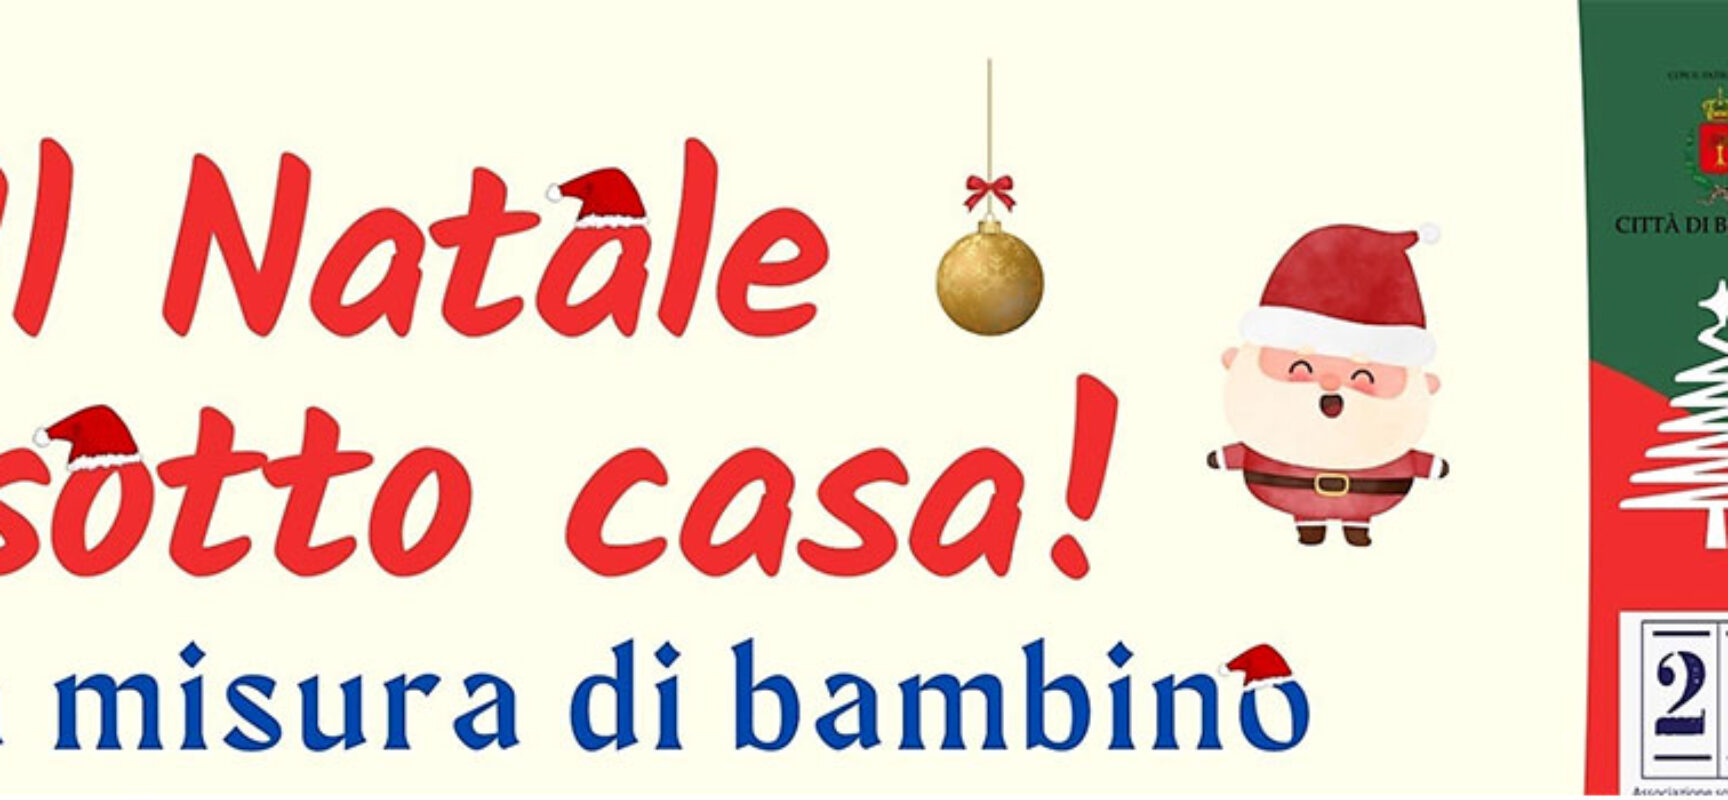 “Il Natale sotto casa”, iniziativa in Corso Umberto per bambini e famiglie